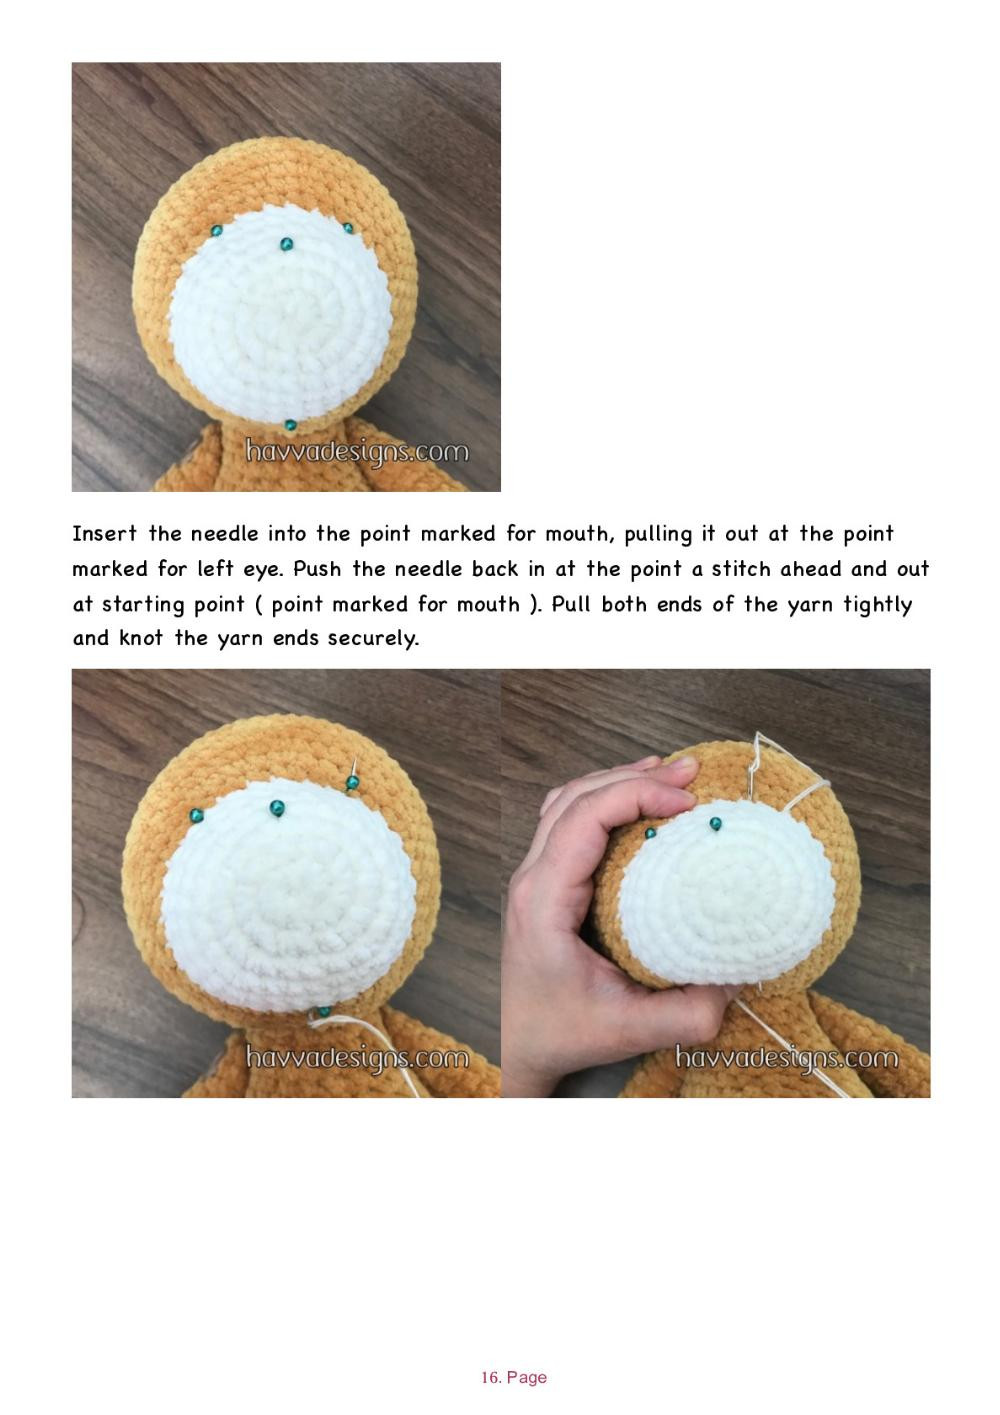 Teddy Bear white muzzle crochet pattern